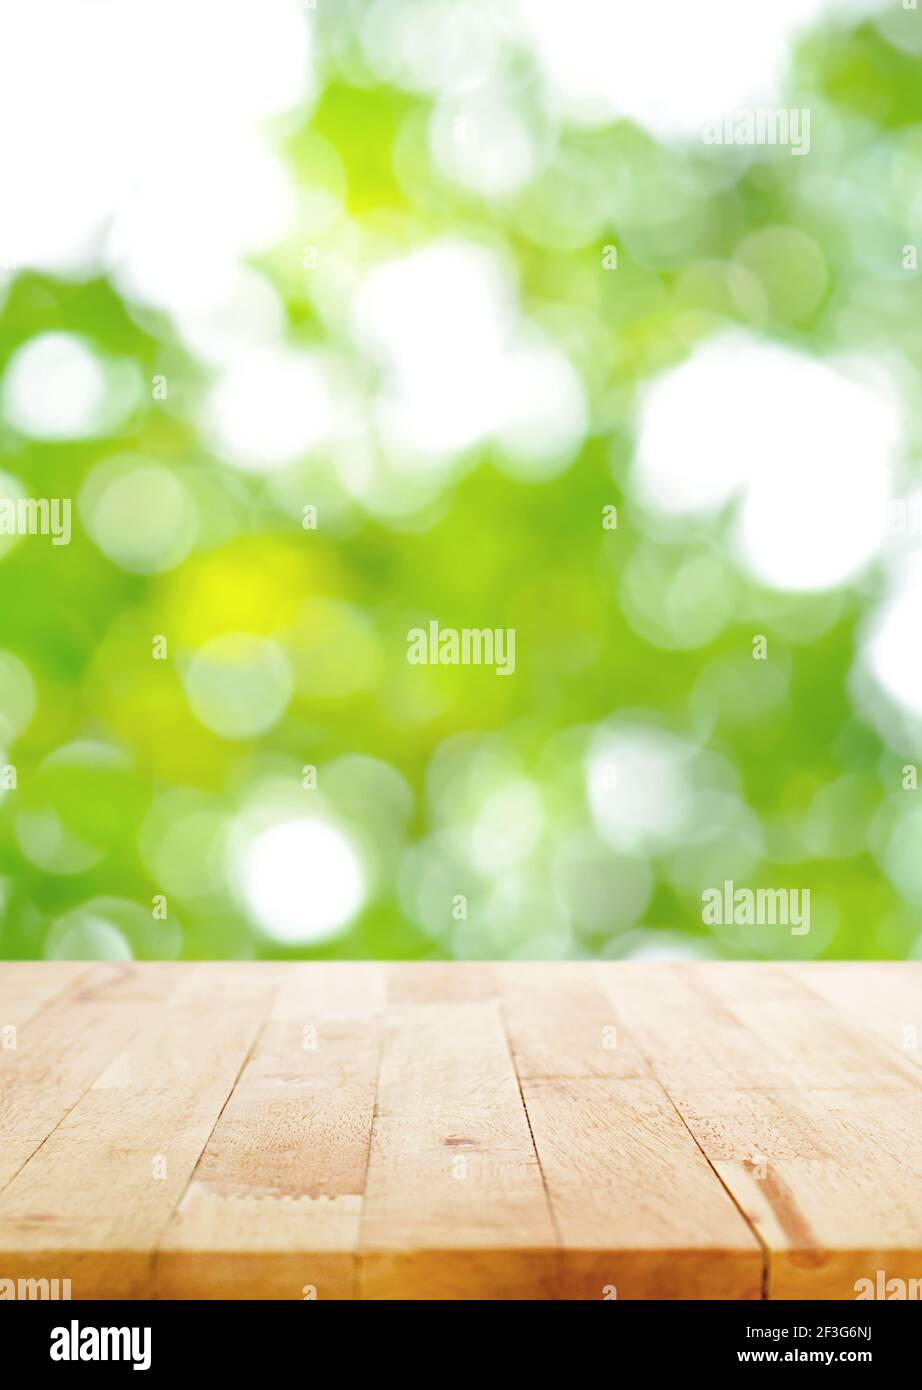 Holztischplatte auf unscharfen grünen Bokeh Hintergrund, Poster Größe Verhältnis - kann für die Montage oder Anzeige Ihrer Produkte verwendet werden Stockfoto